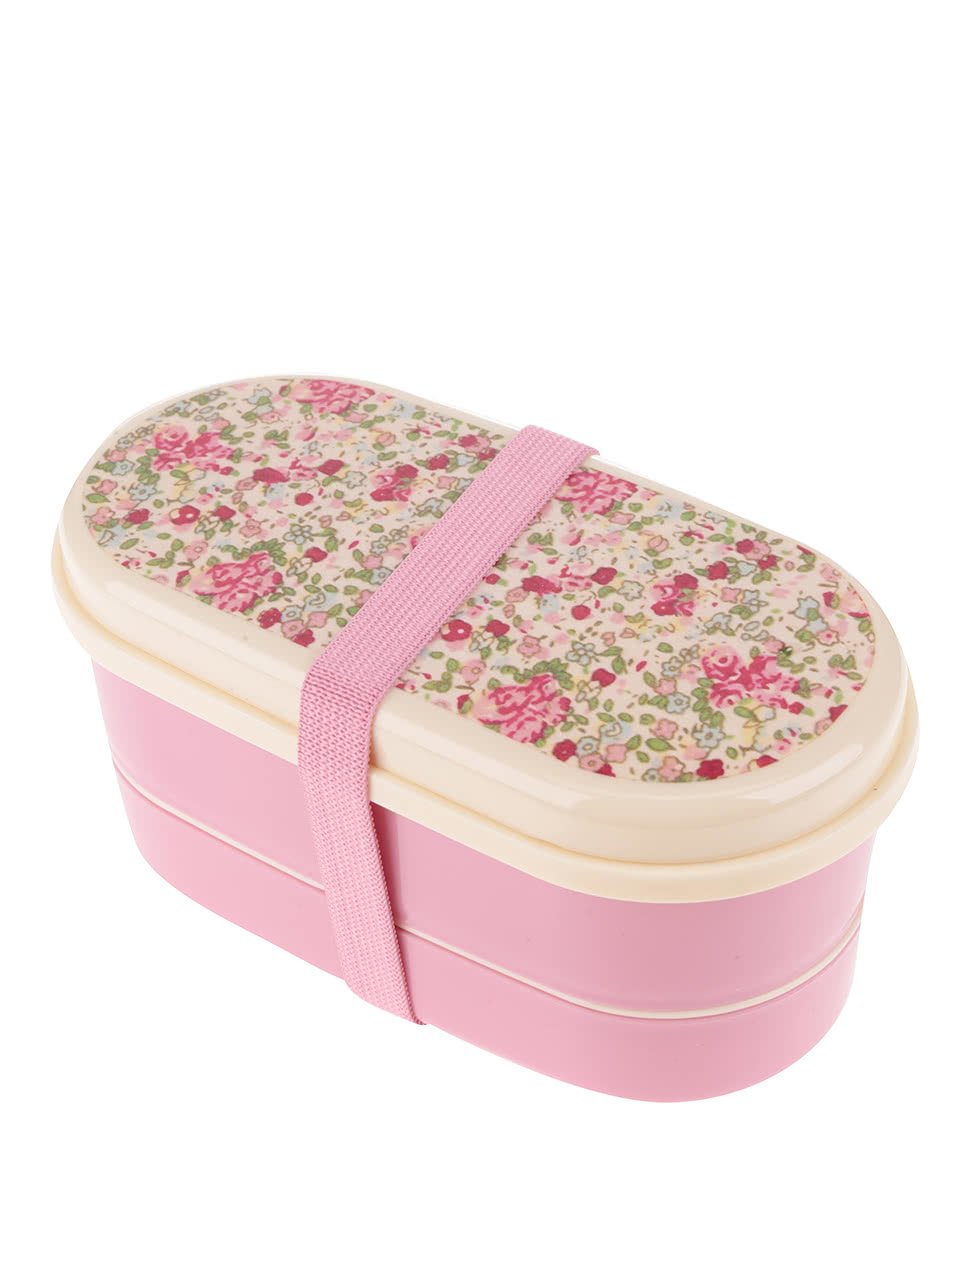 Růžový květovaný box na jídlo Sass & Belle Bento